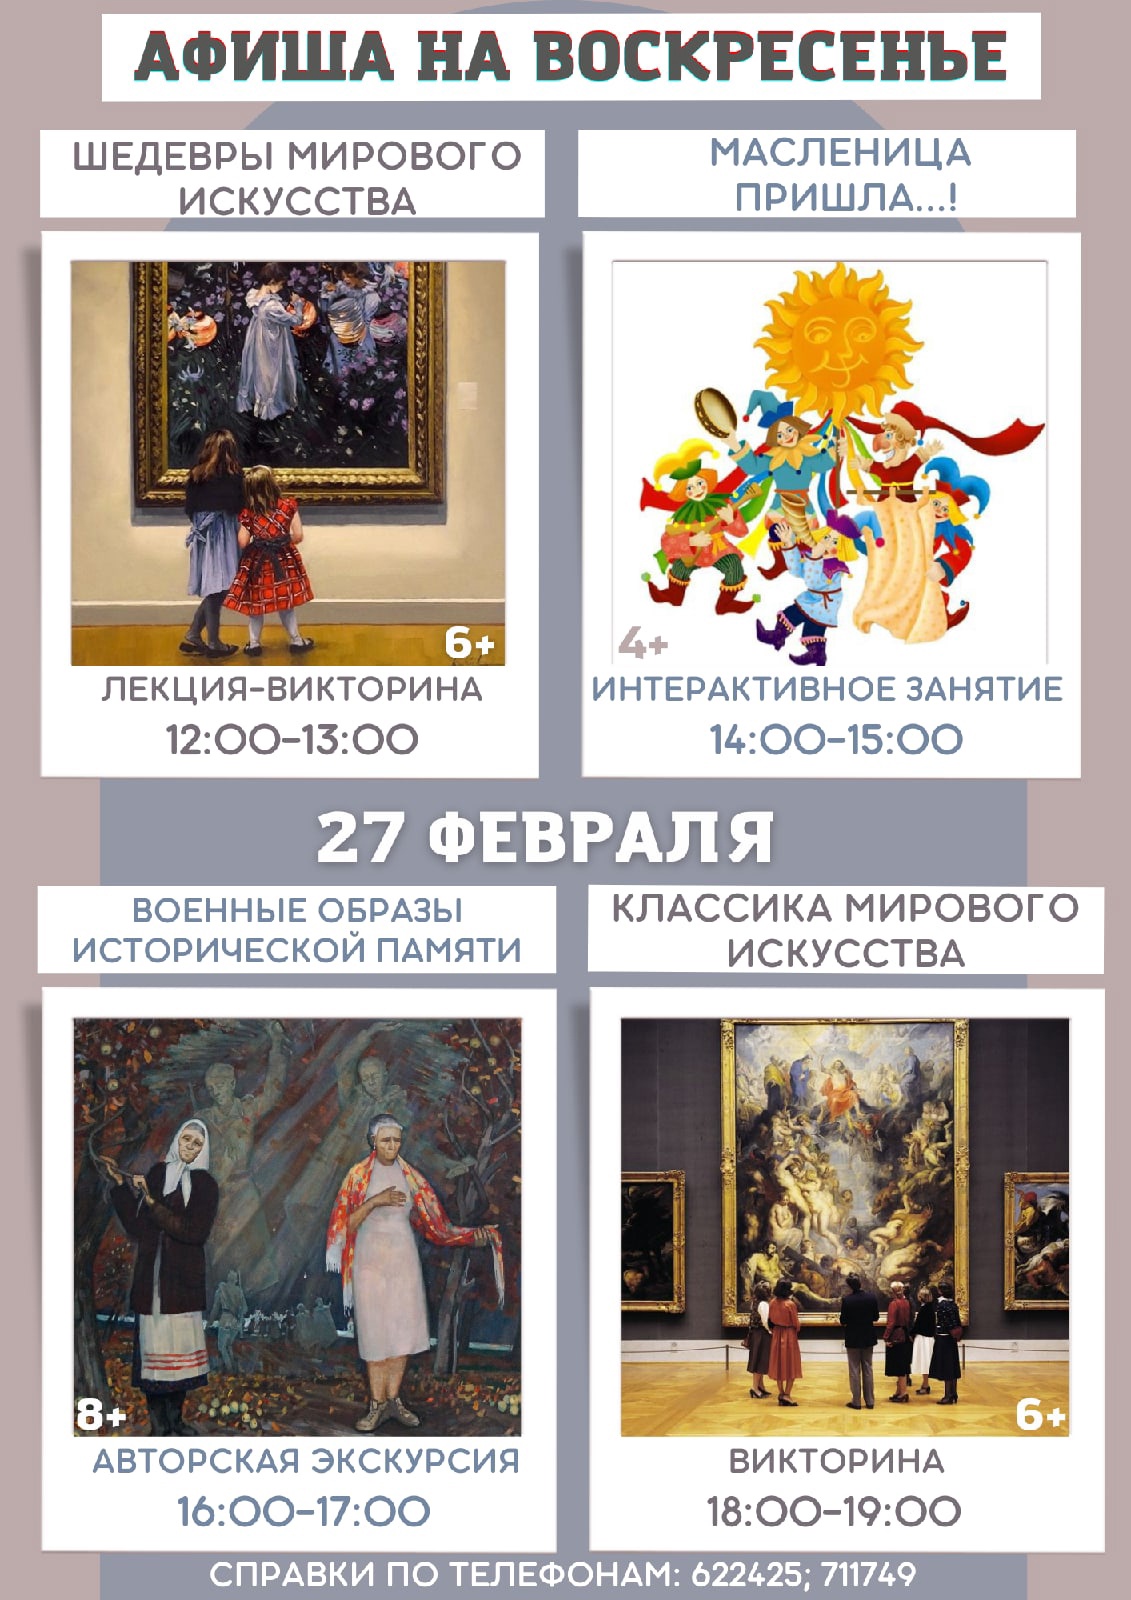 Викторины, интерактивные занятия, экскурсии: музей им. П.В.Масленикова приглашает провести выходные вместе